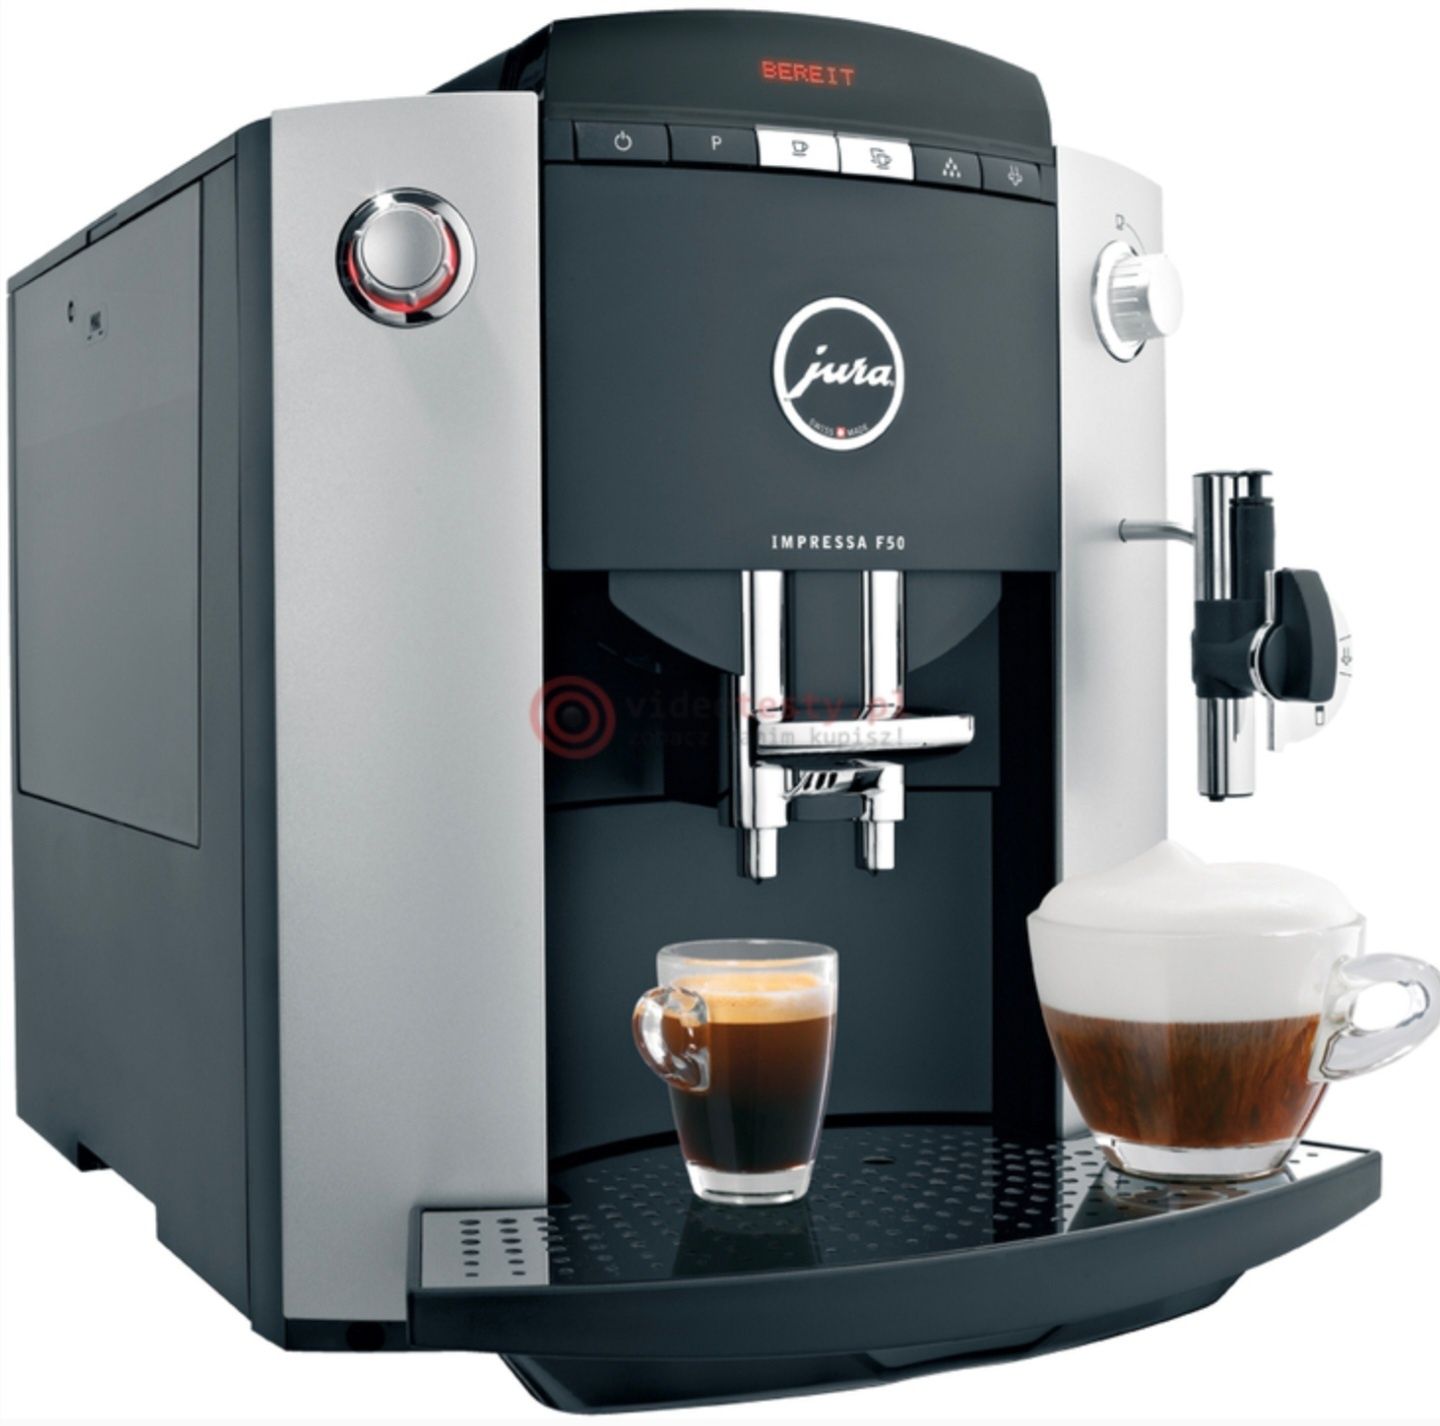 Automatyczny ekspres do kawy marki Jura impressa f50